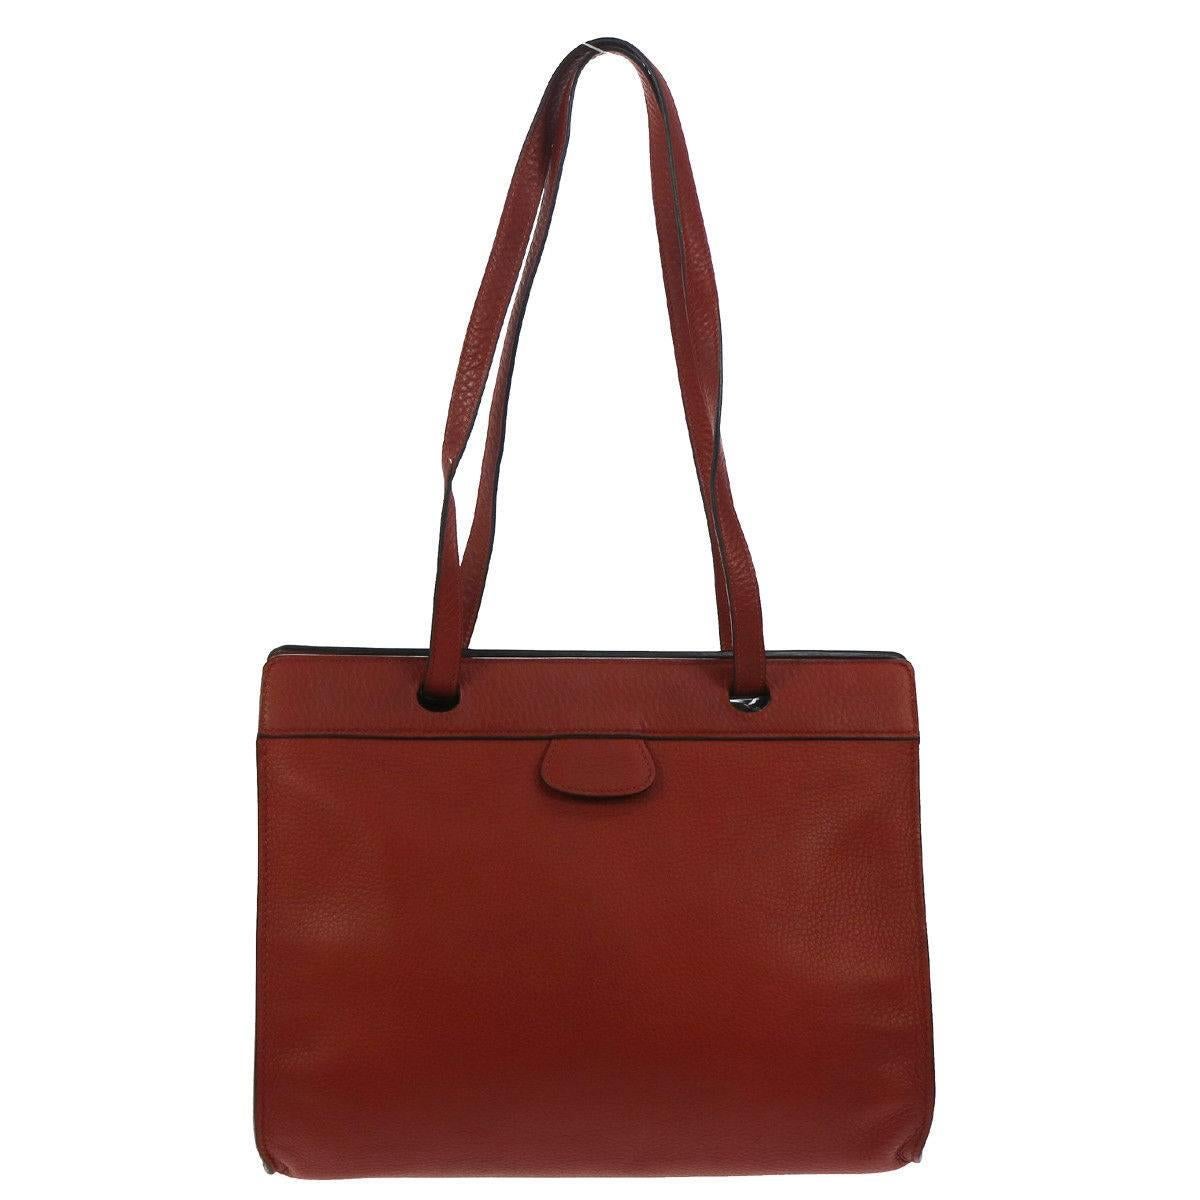 Hermes Rouge Leather Carryall Men's Women's Travel Shopper Tote Shoulder Bag